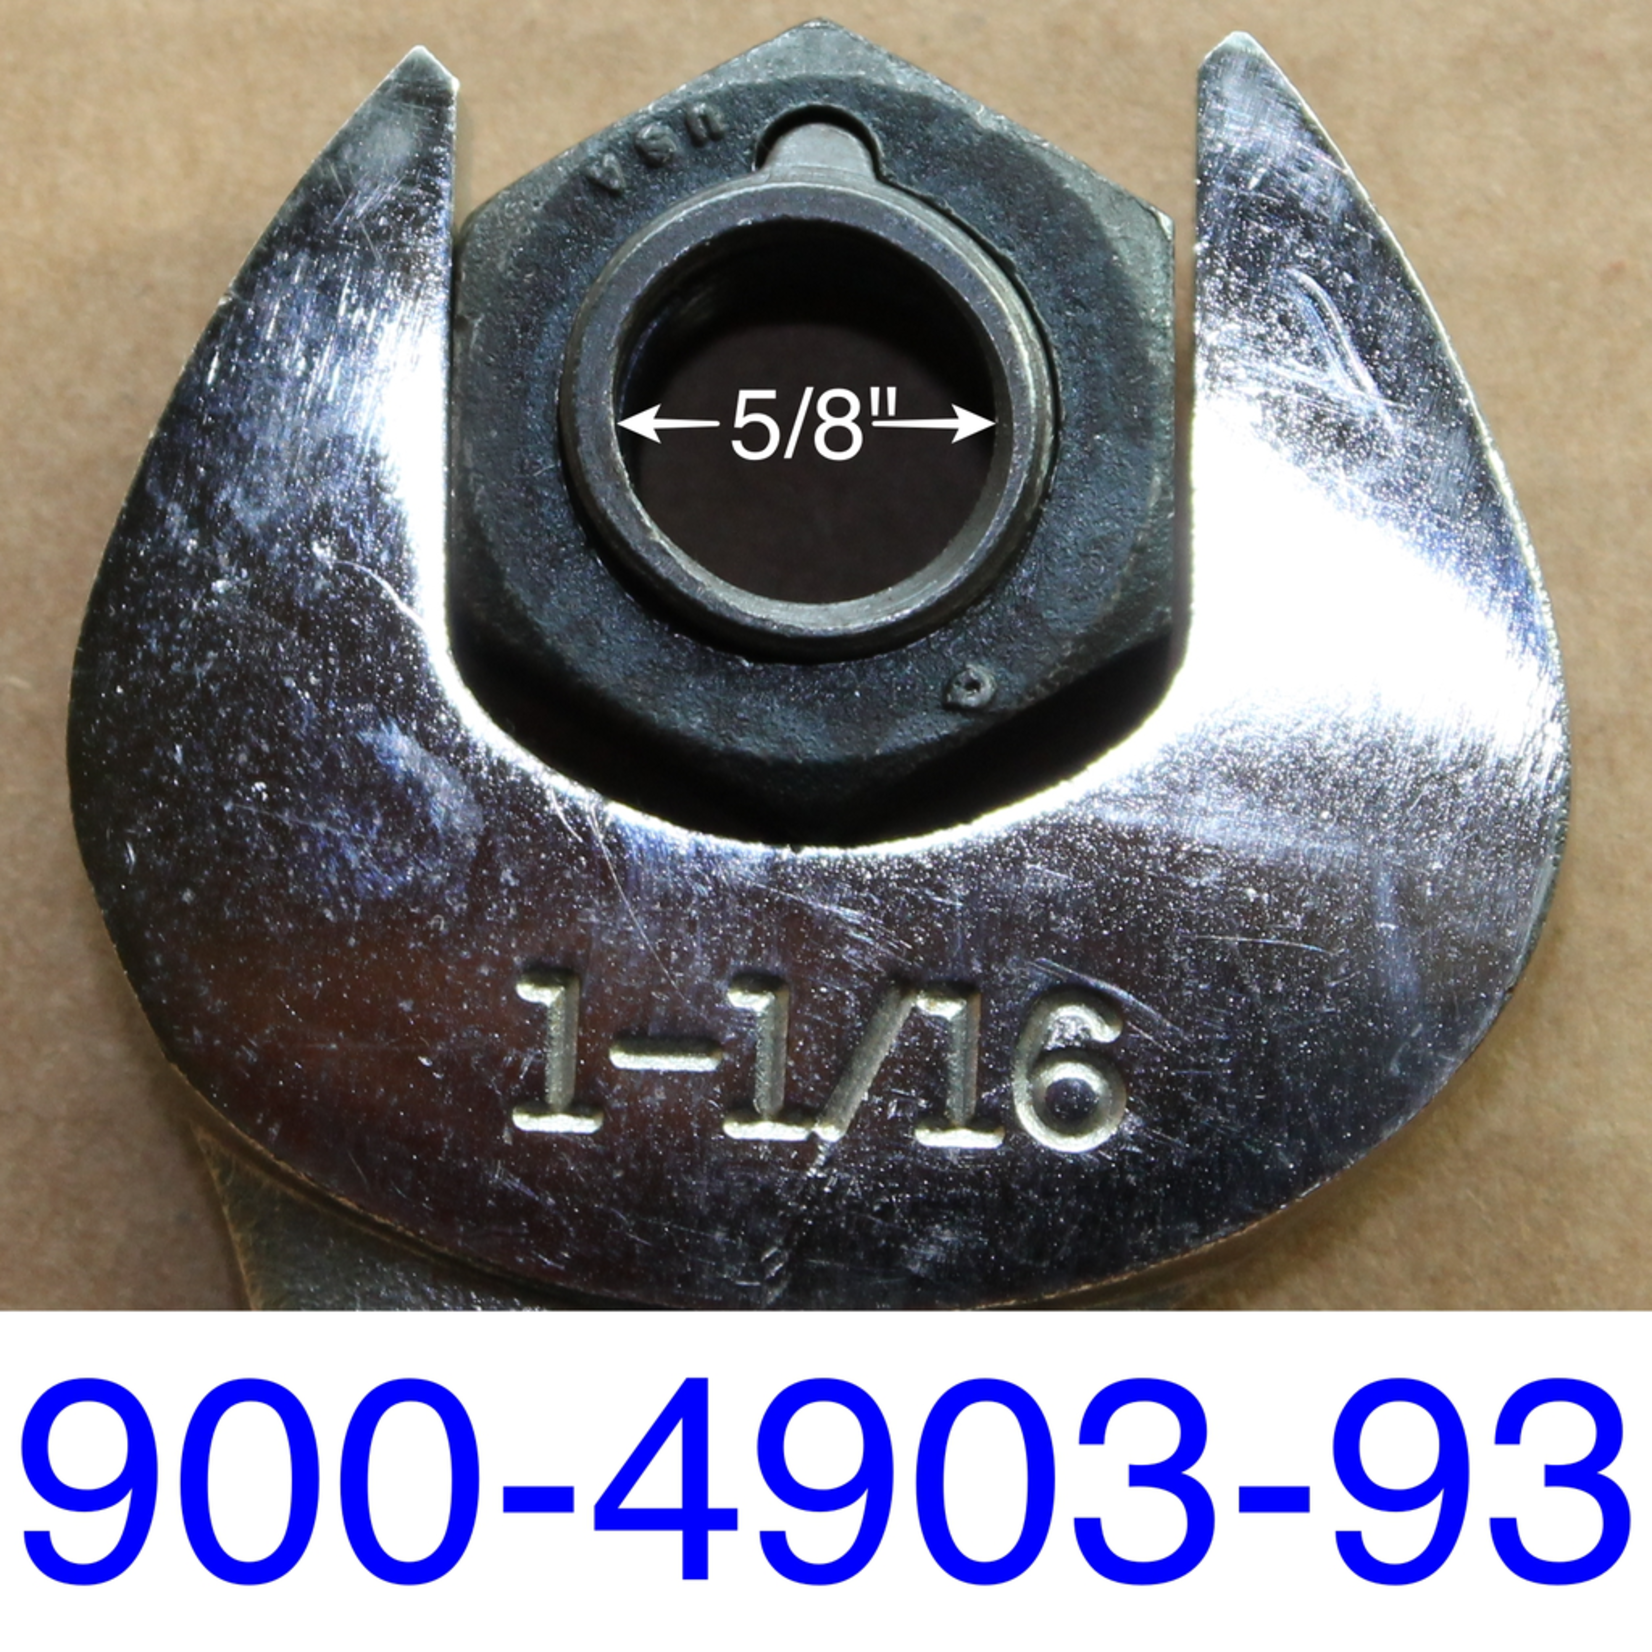 Blade (Knife) Nut - Steel Lock, 5/8in-11, (180 Ft-Lb Of Torque), 280-1850